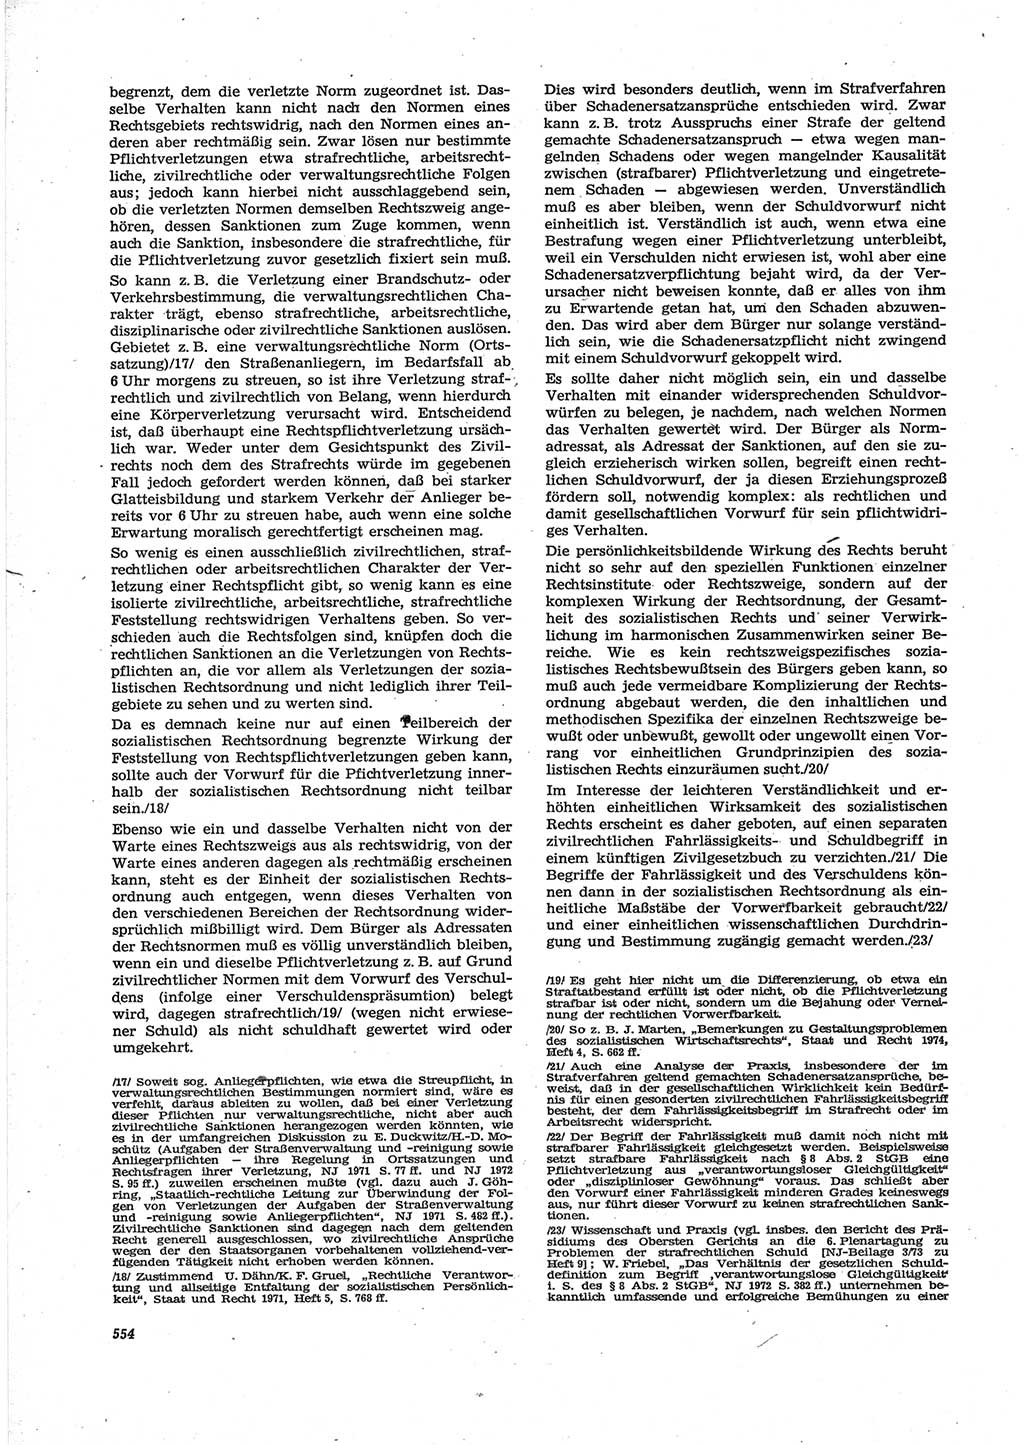 Neue Justiz (NJ), Zeitschrift für Recht und Rechtswissenschaft [Deutsche Demokratische Republik (DDR)], 28. Jahrgang 1974, Seite 554 (NJ DDR 1974, S. 554)